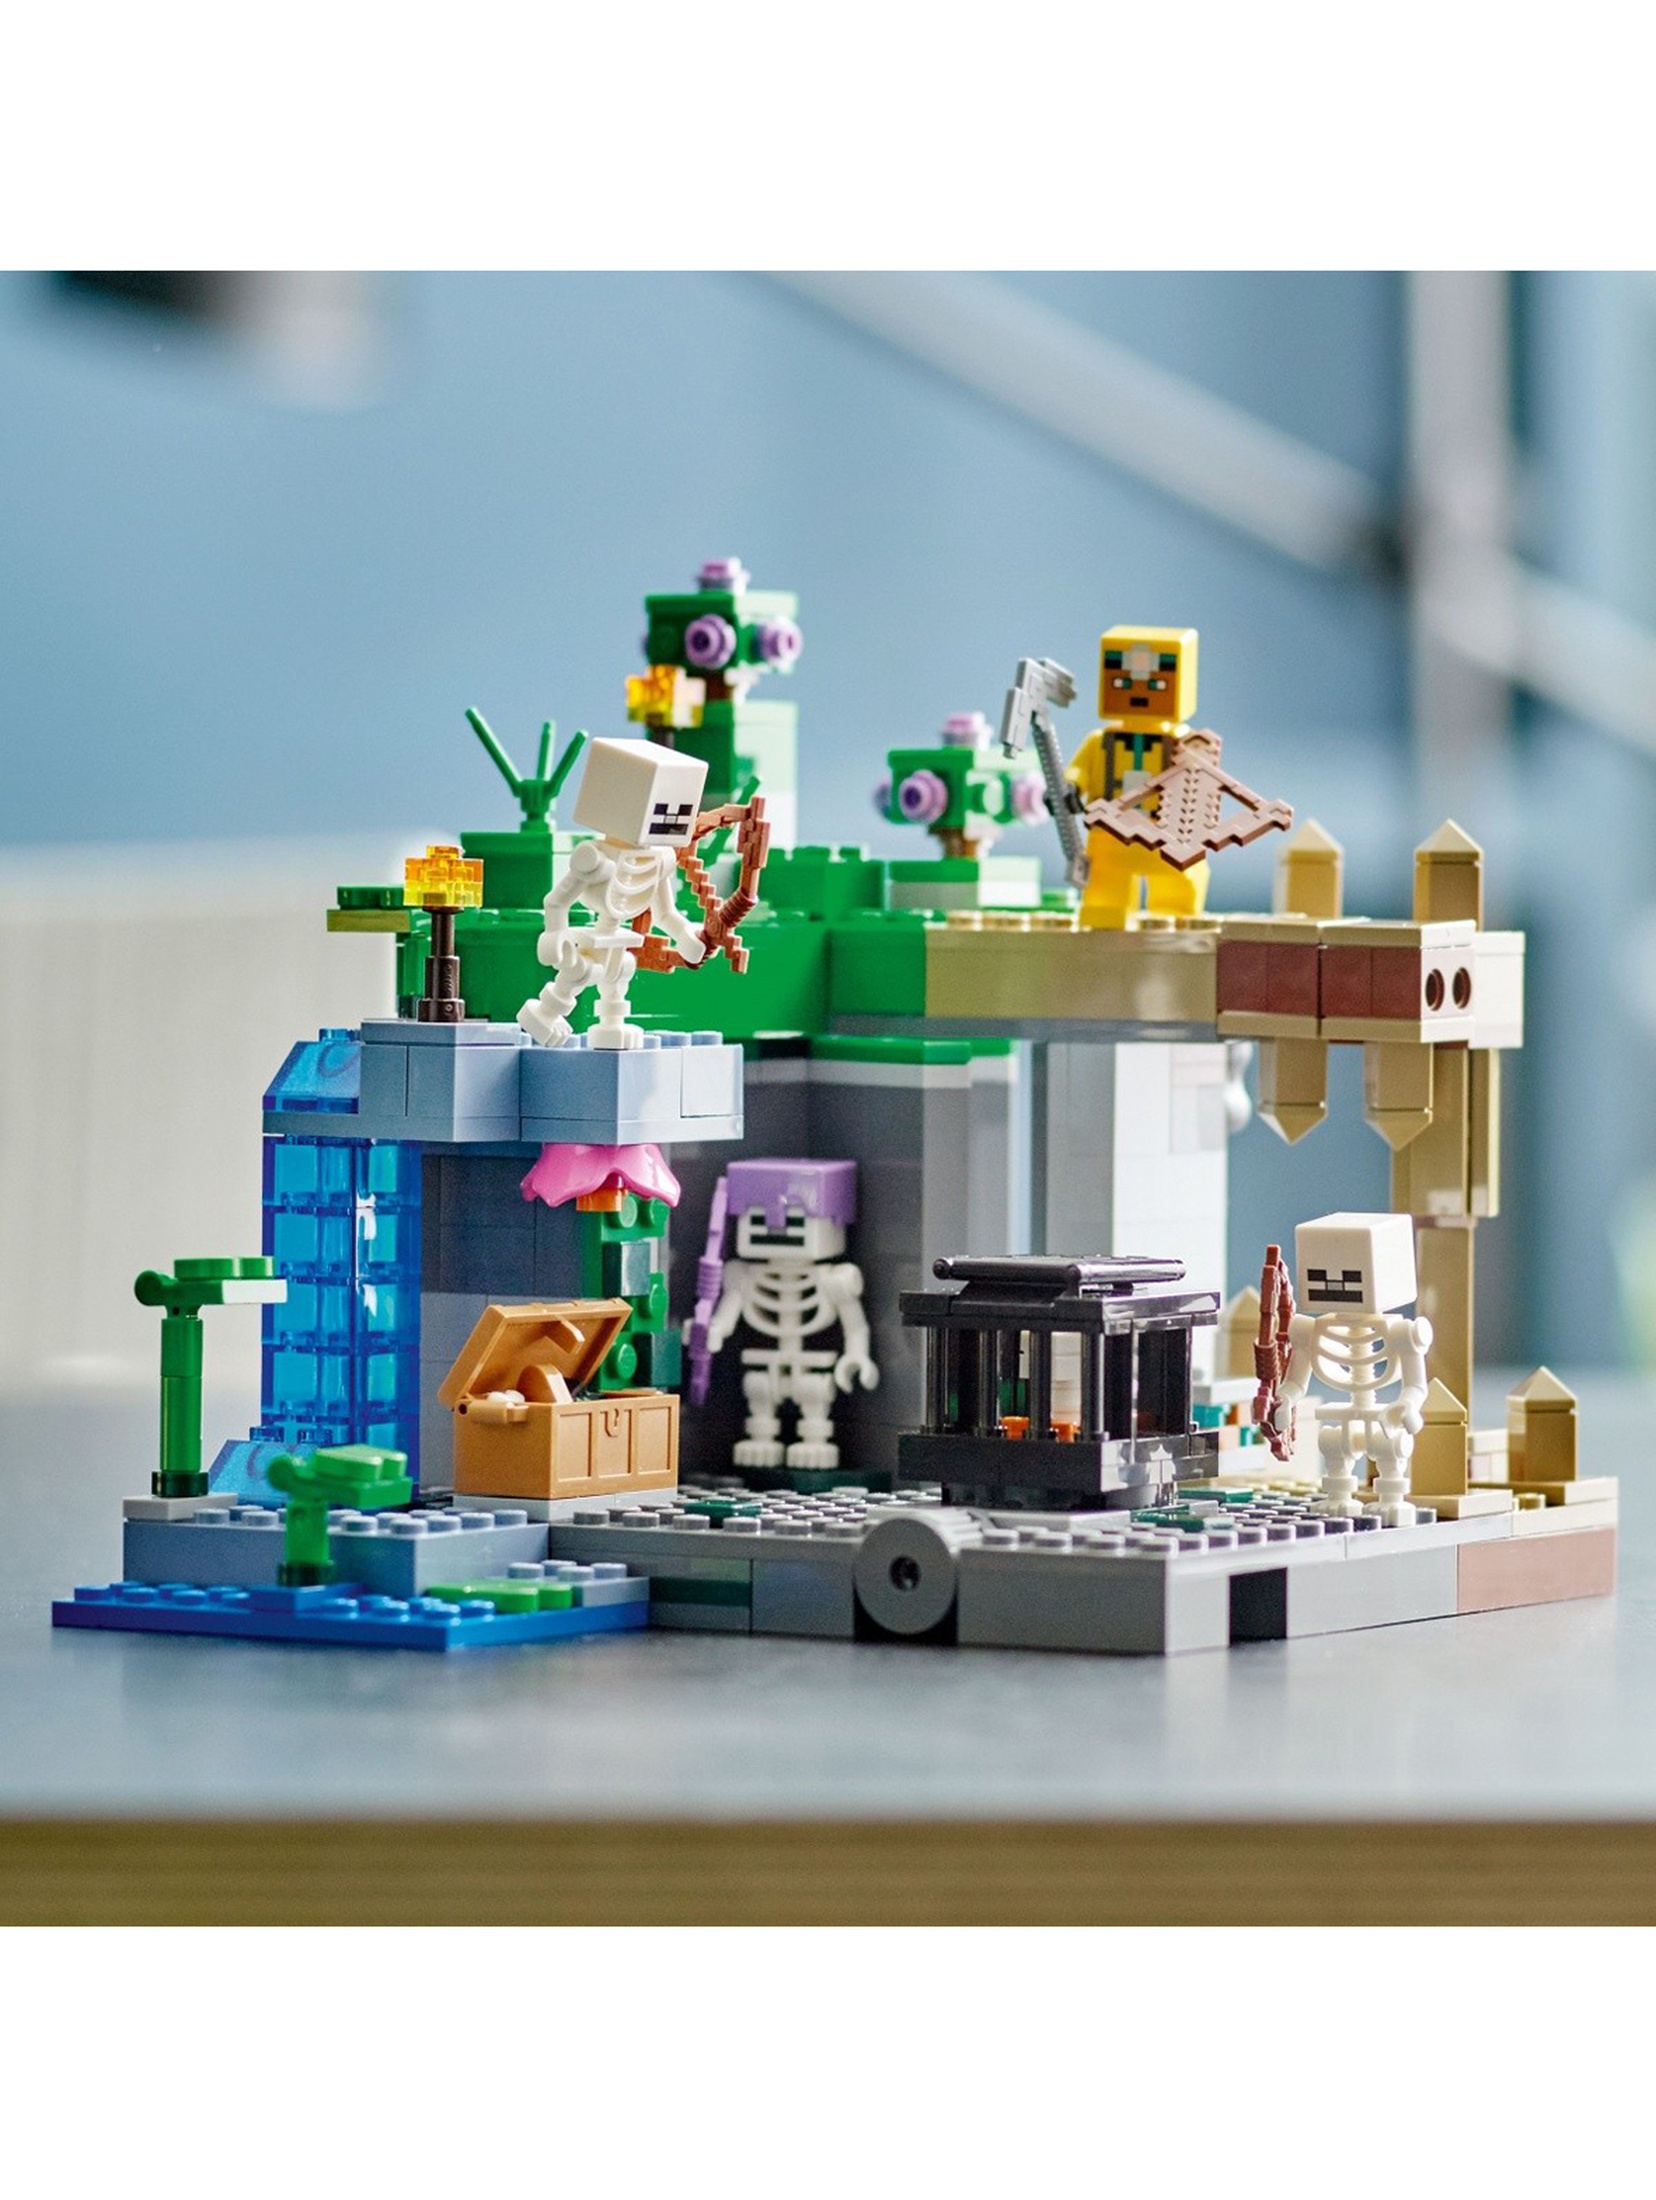 LEGO Minecraft - Lochy Szkieletów 21189 - 364 elementy, wiek 8+